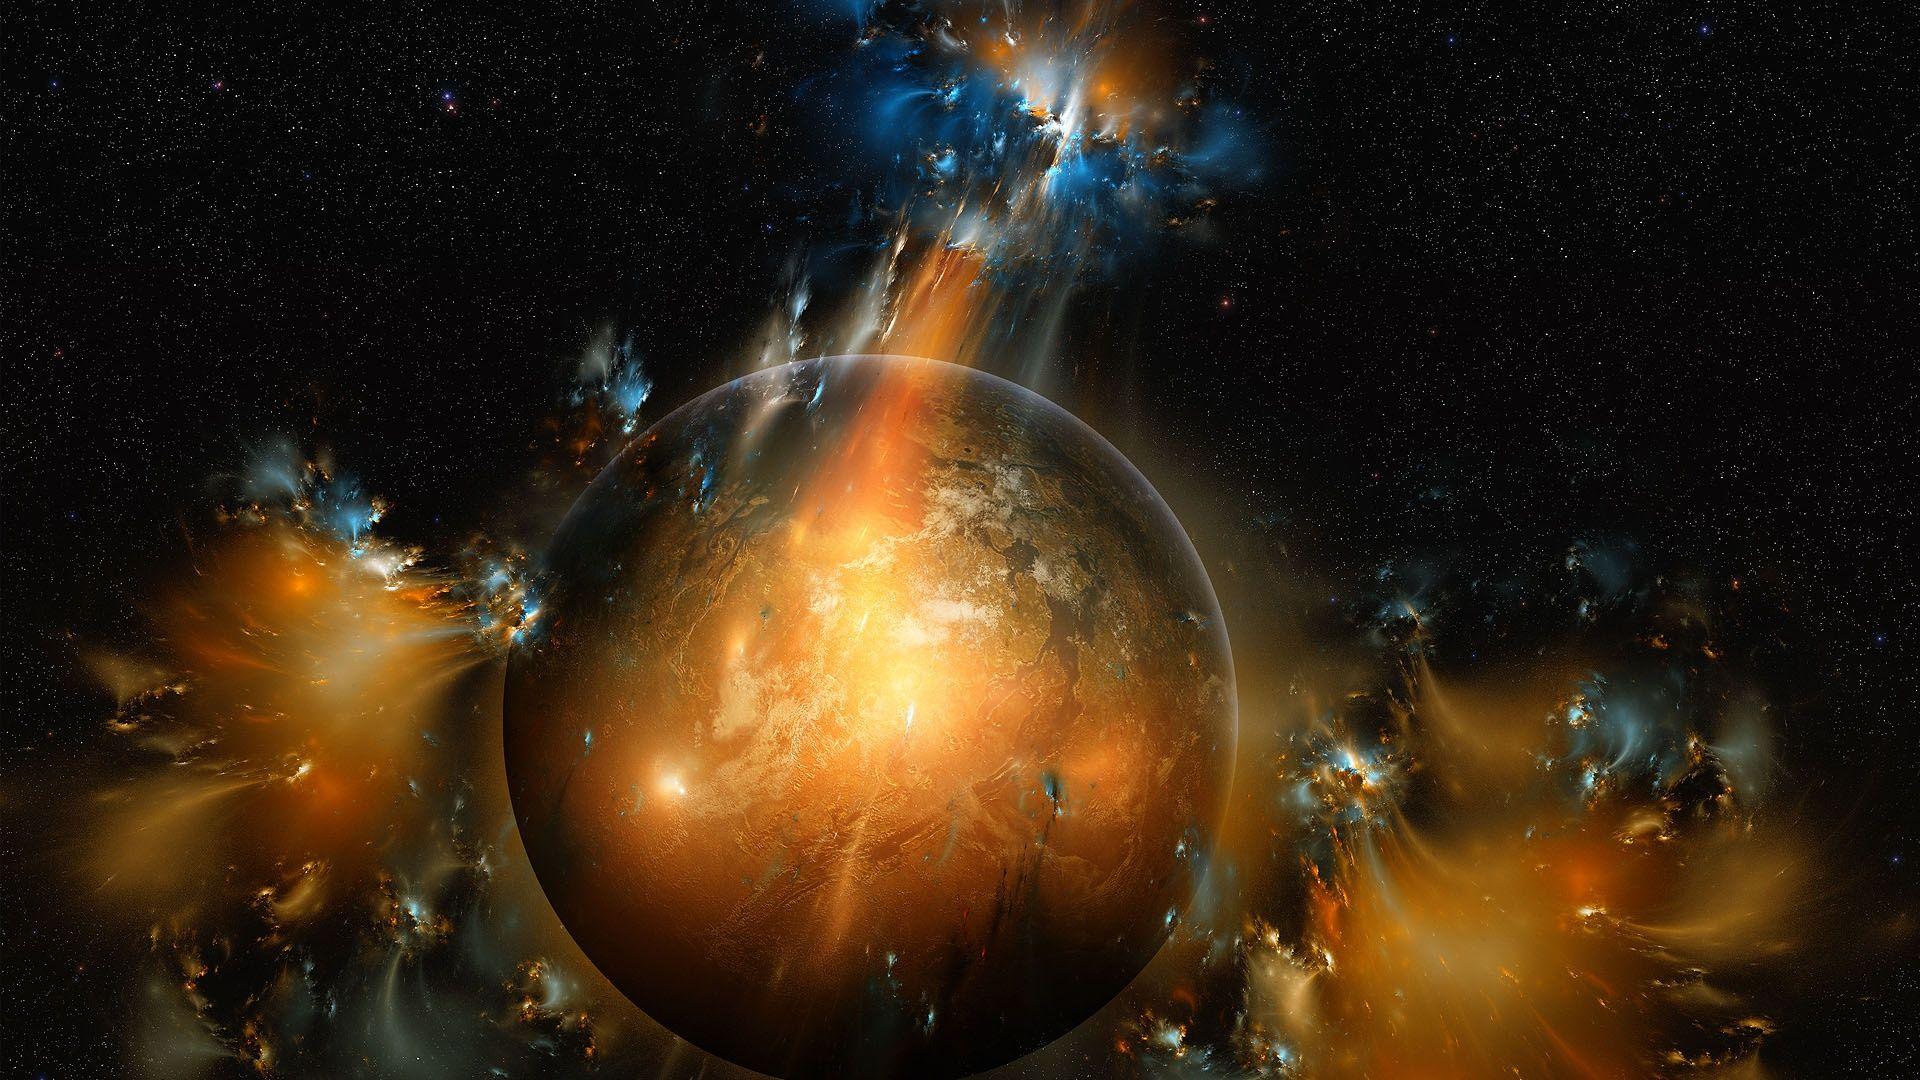 Solar System HD Wallpaper 1080p: Solar System Explosions HD